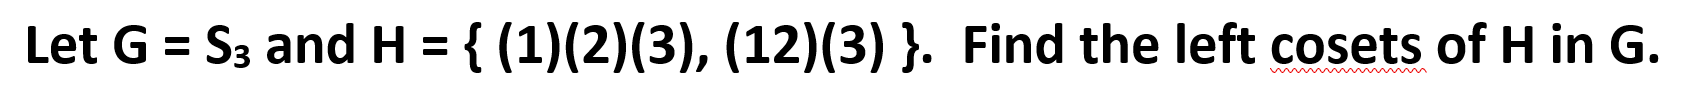 { (1)(2)(3), (12) (3) }. Find the left cosets of H in G.
S3 and H
Let G
www
